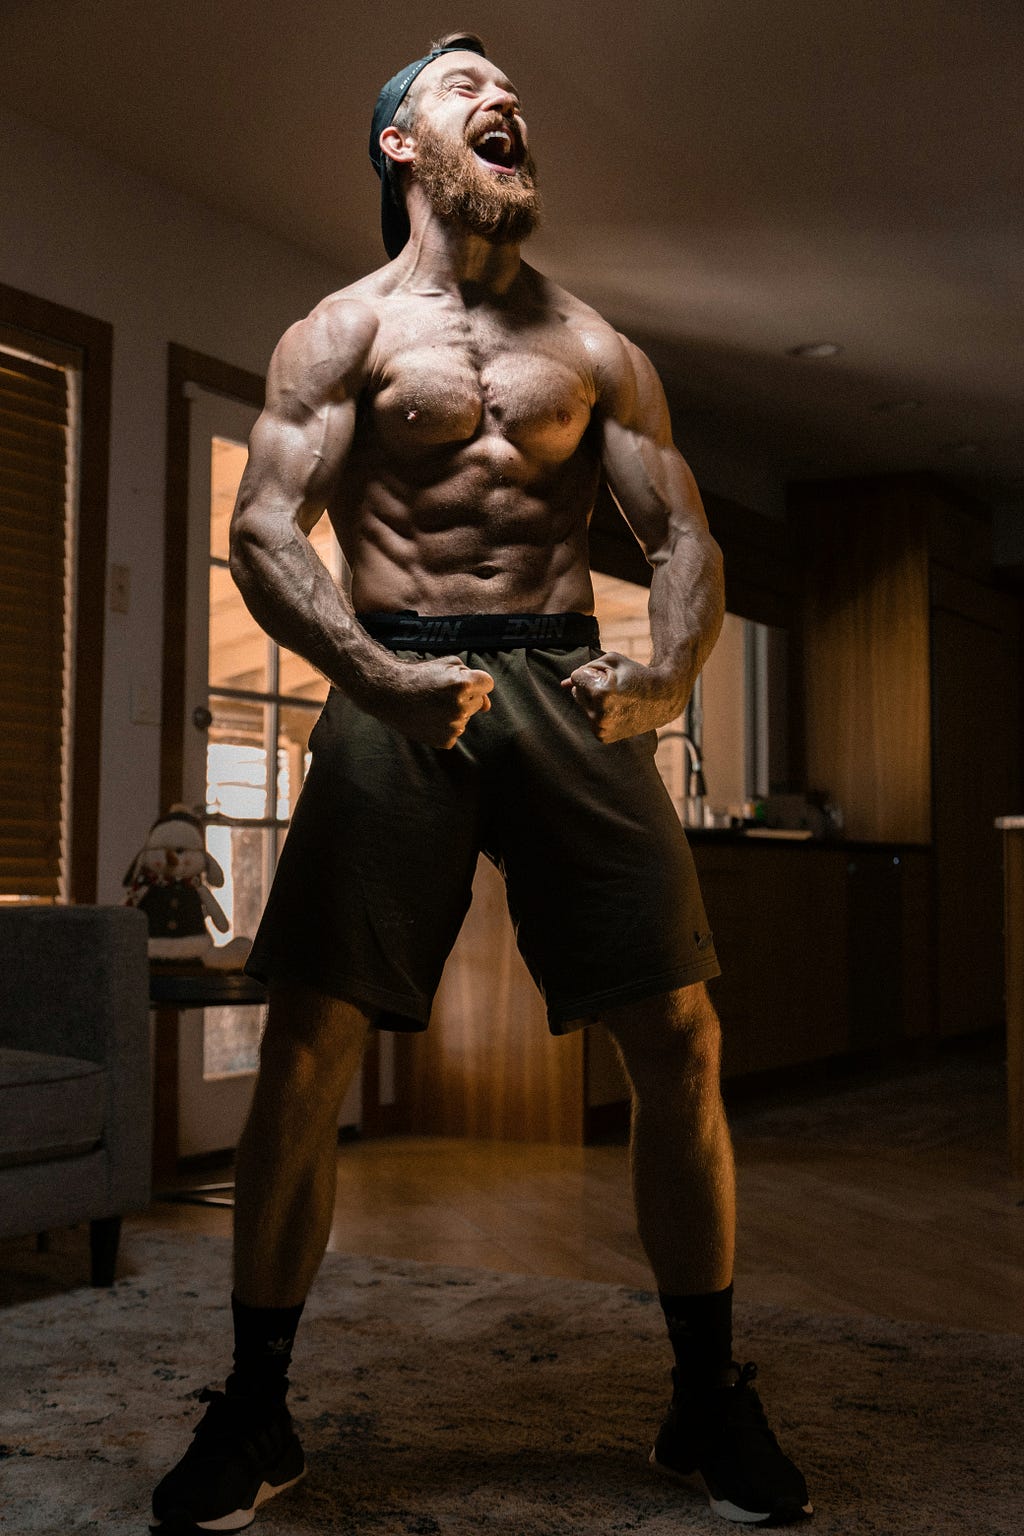 A muscular topless man flexing